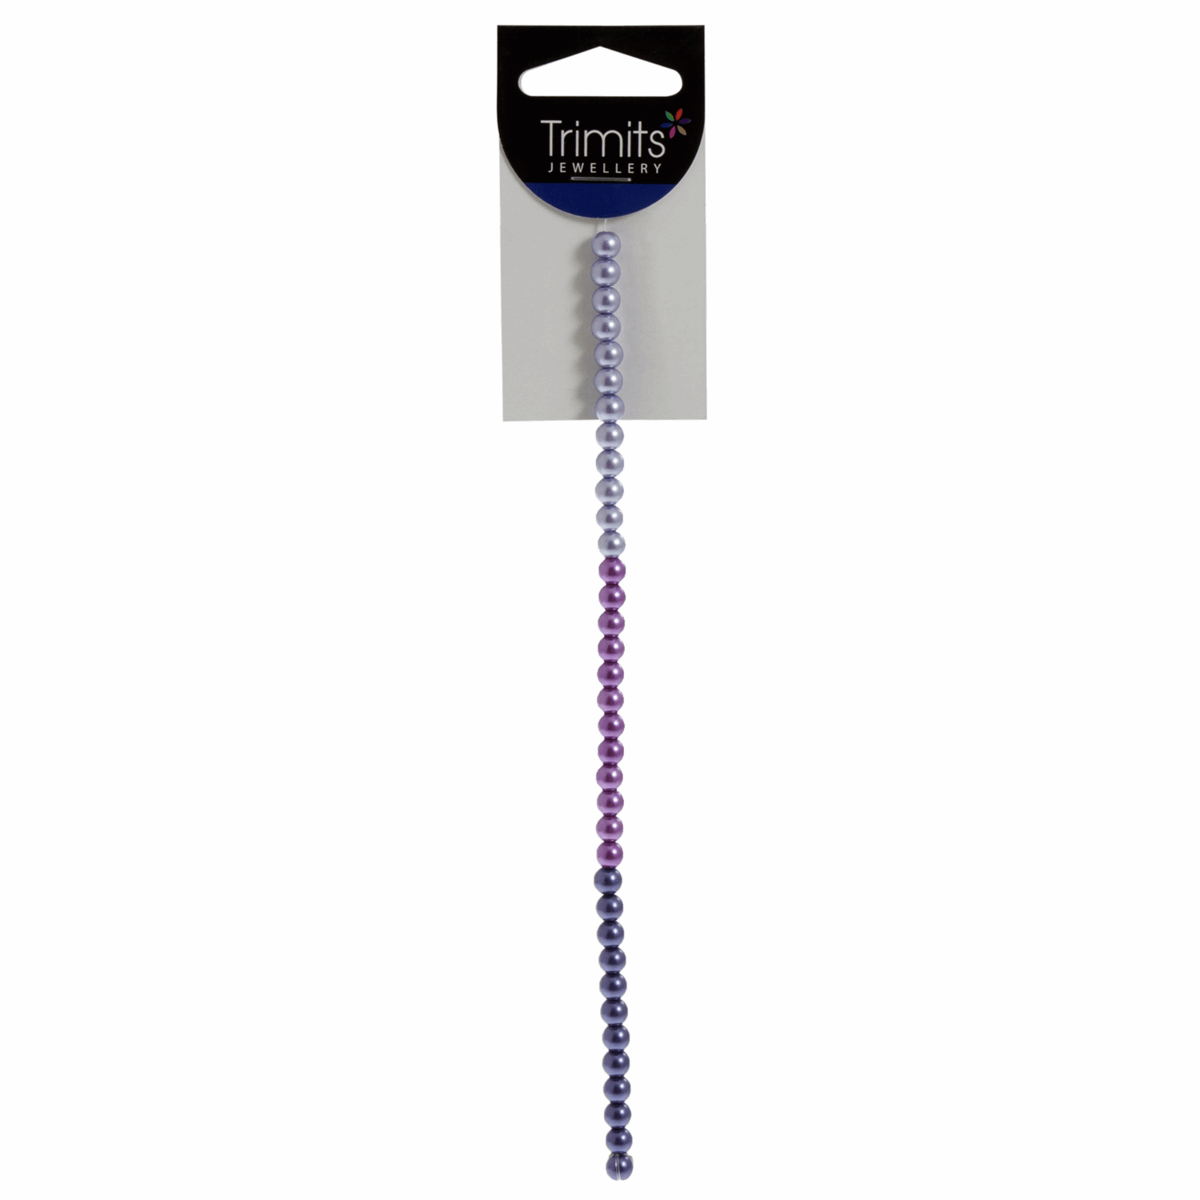 Trimits Purple Mix Strung Glass Pearls - 20cm x 6mm